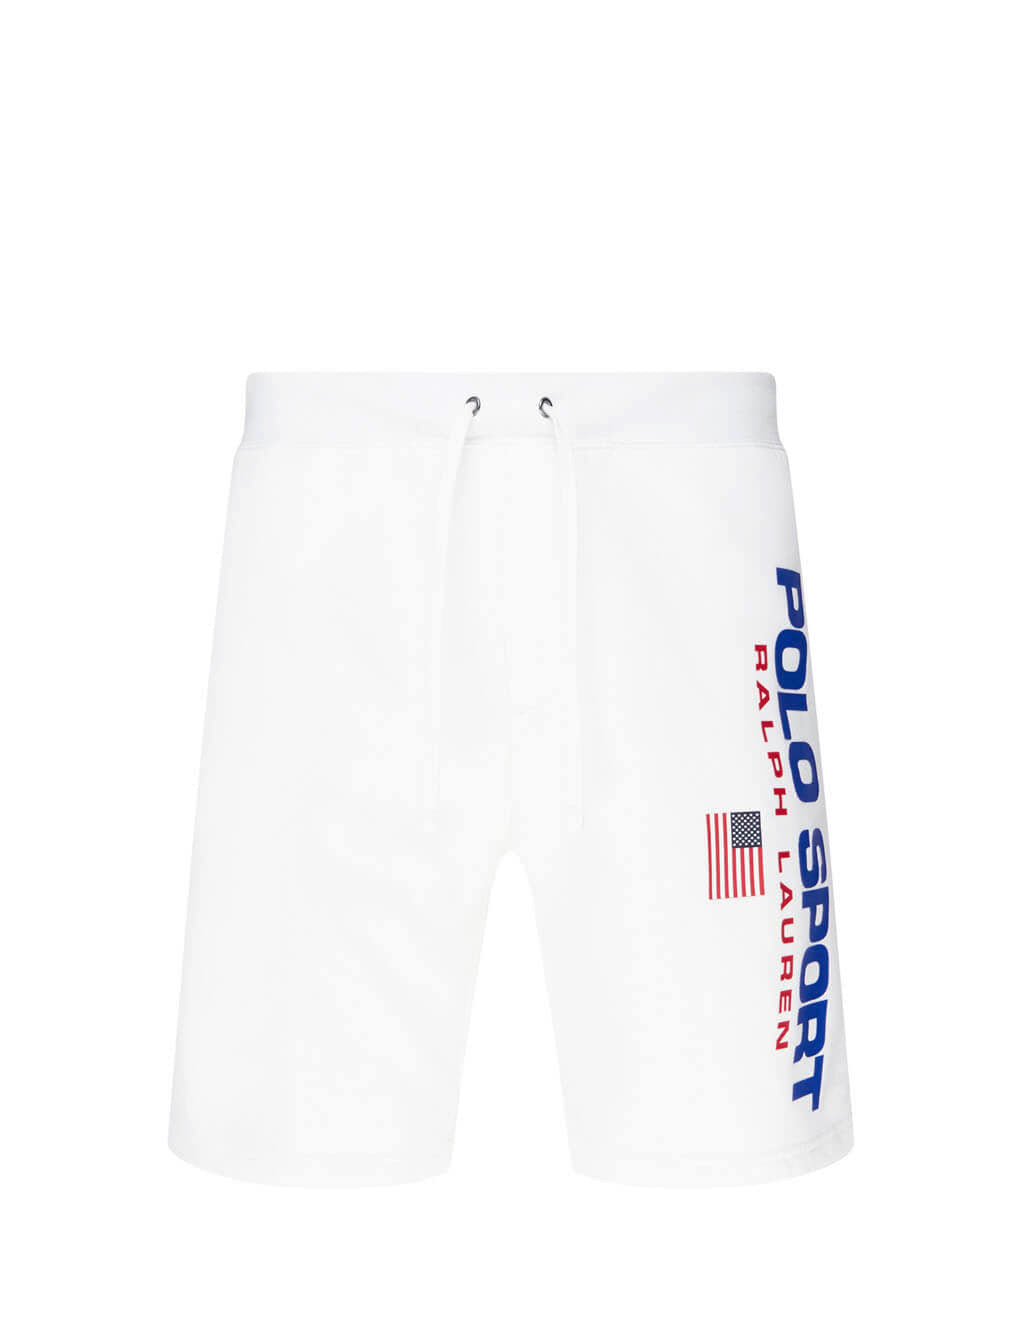 polo rlx shorts